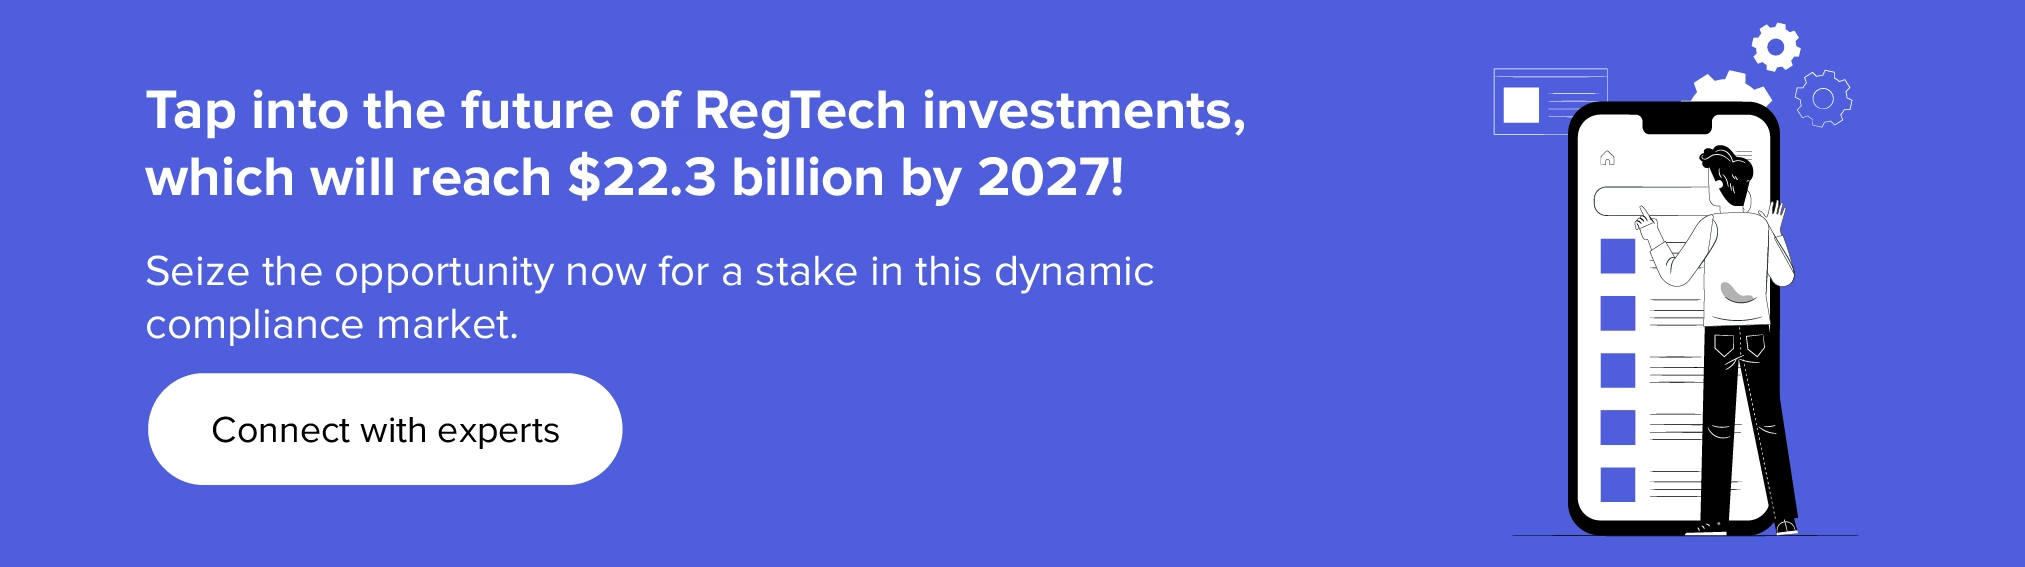 Uzmanlarımızla RegTech yatırımlarının geleceğine dokunun